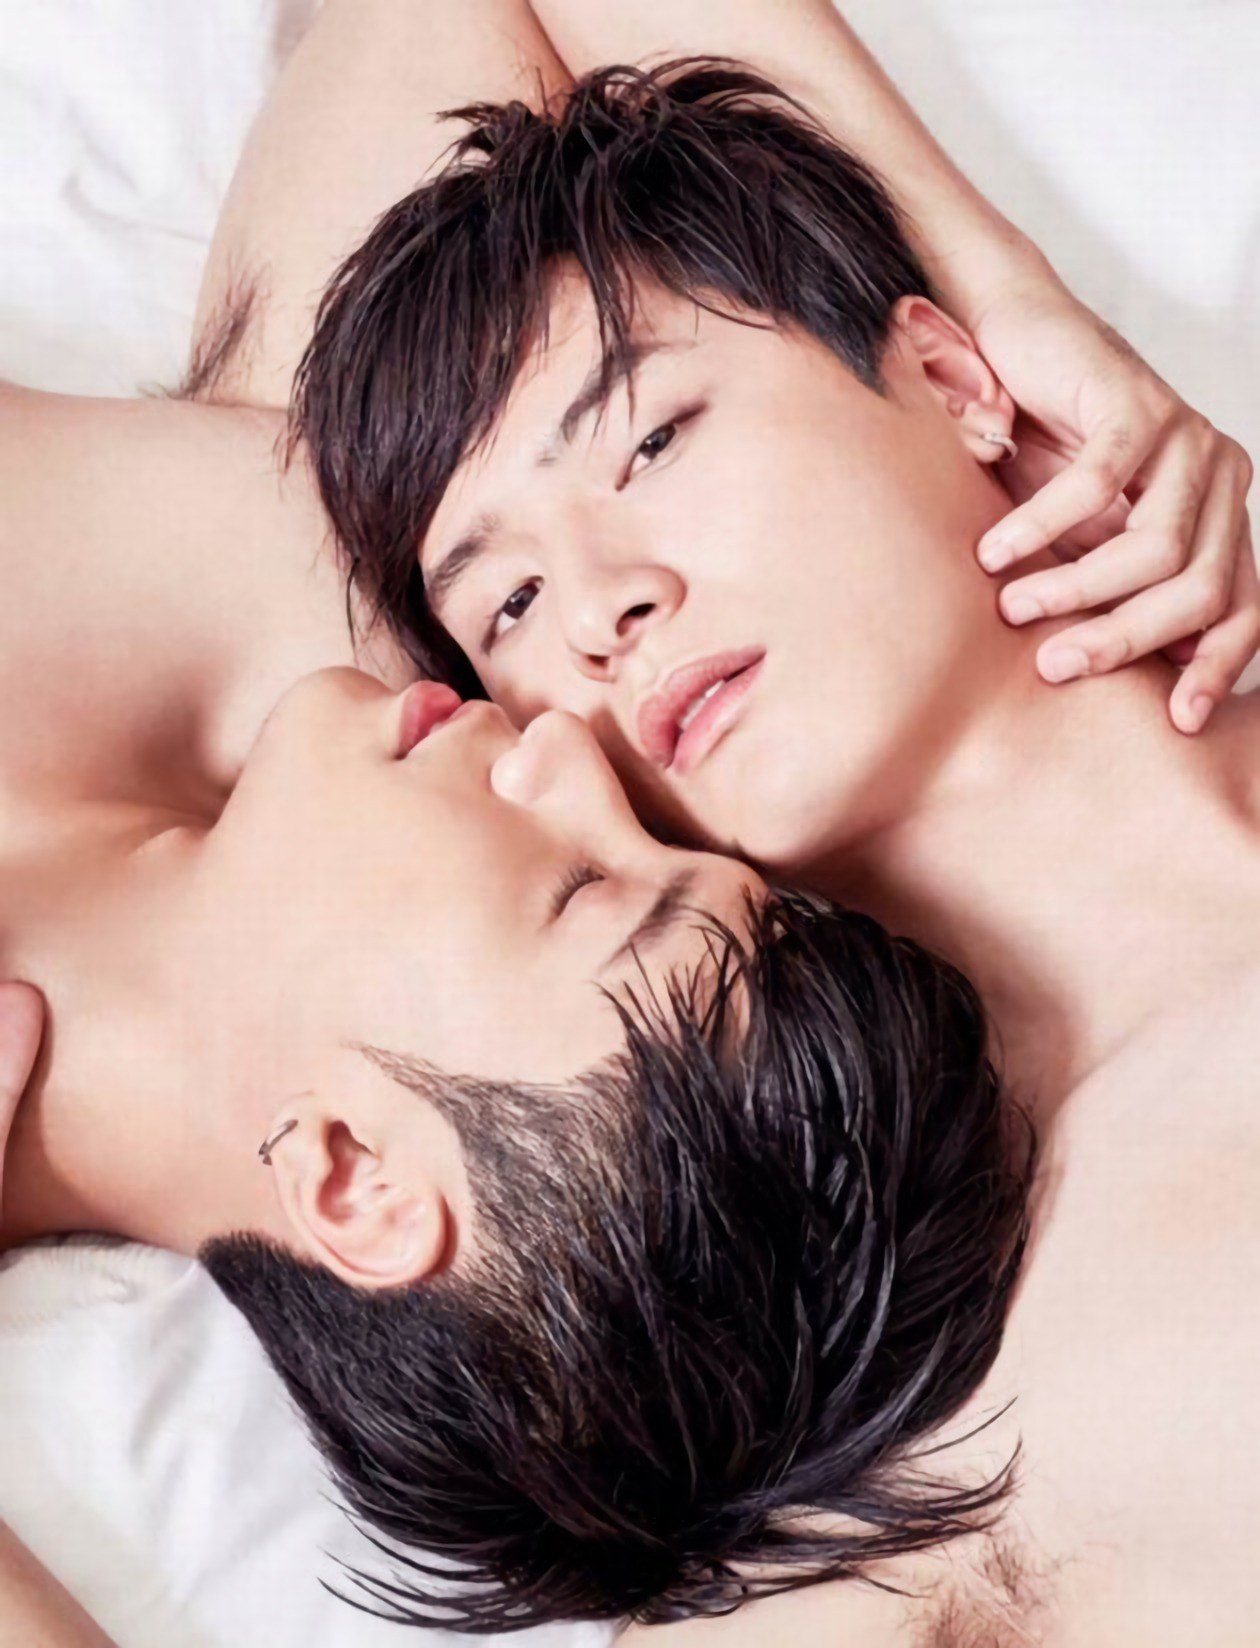 фильмы геев кореи фото 80